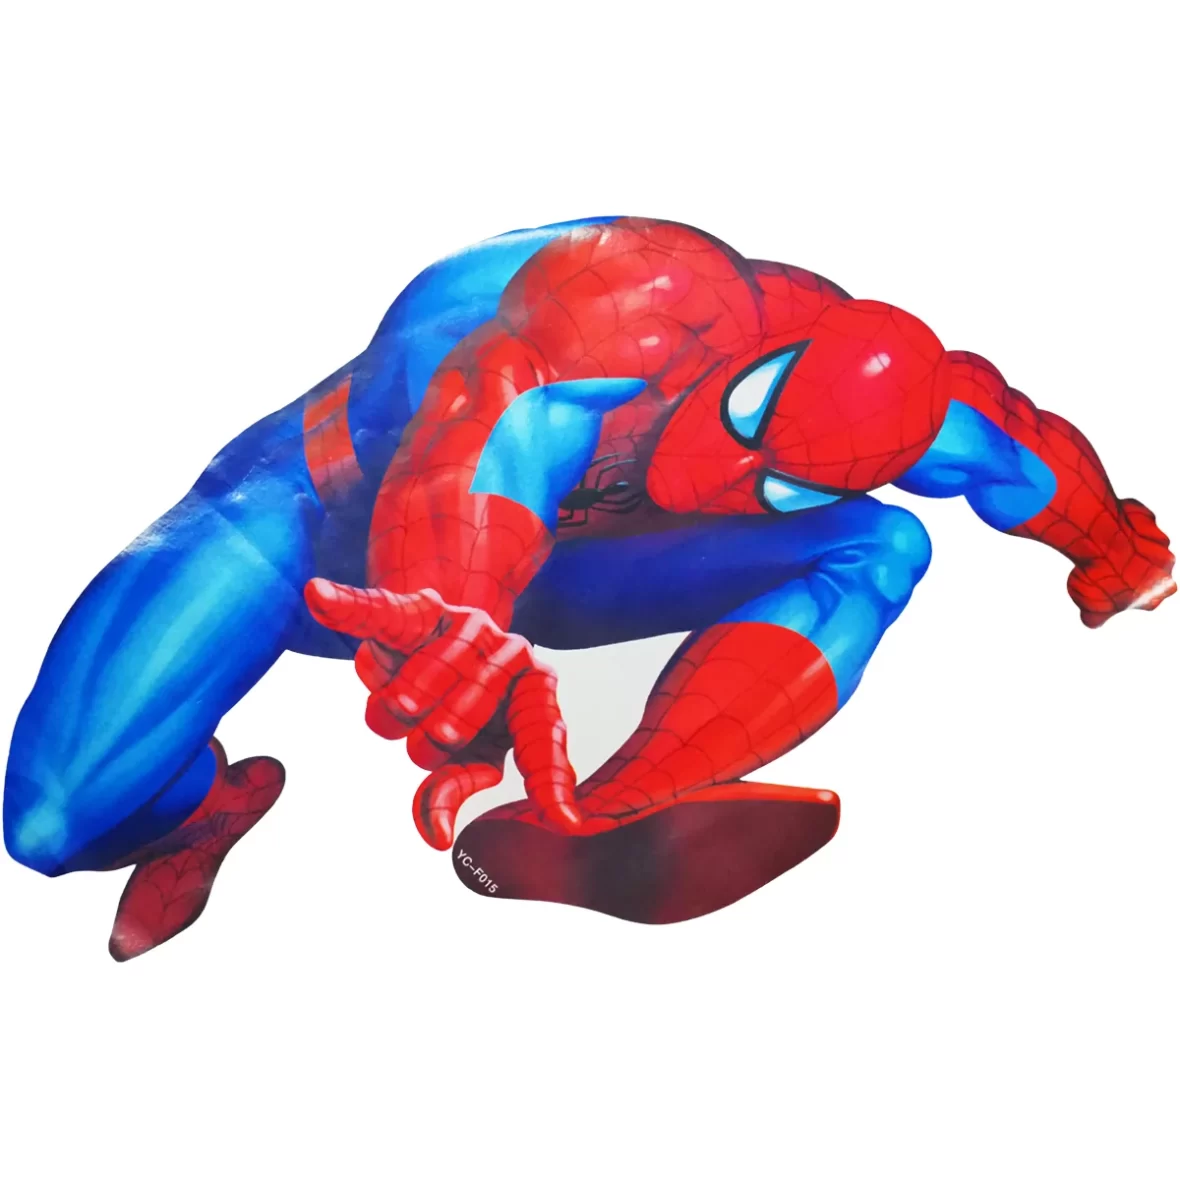 Sticker Spiderman, 20×30 cm